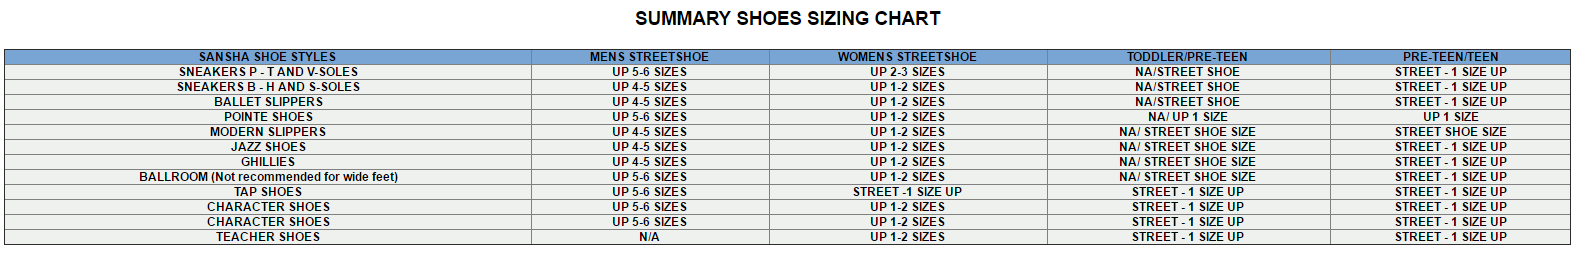 Easy Street Shoe Size Chart